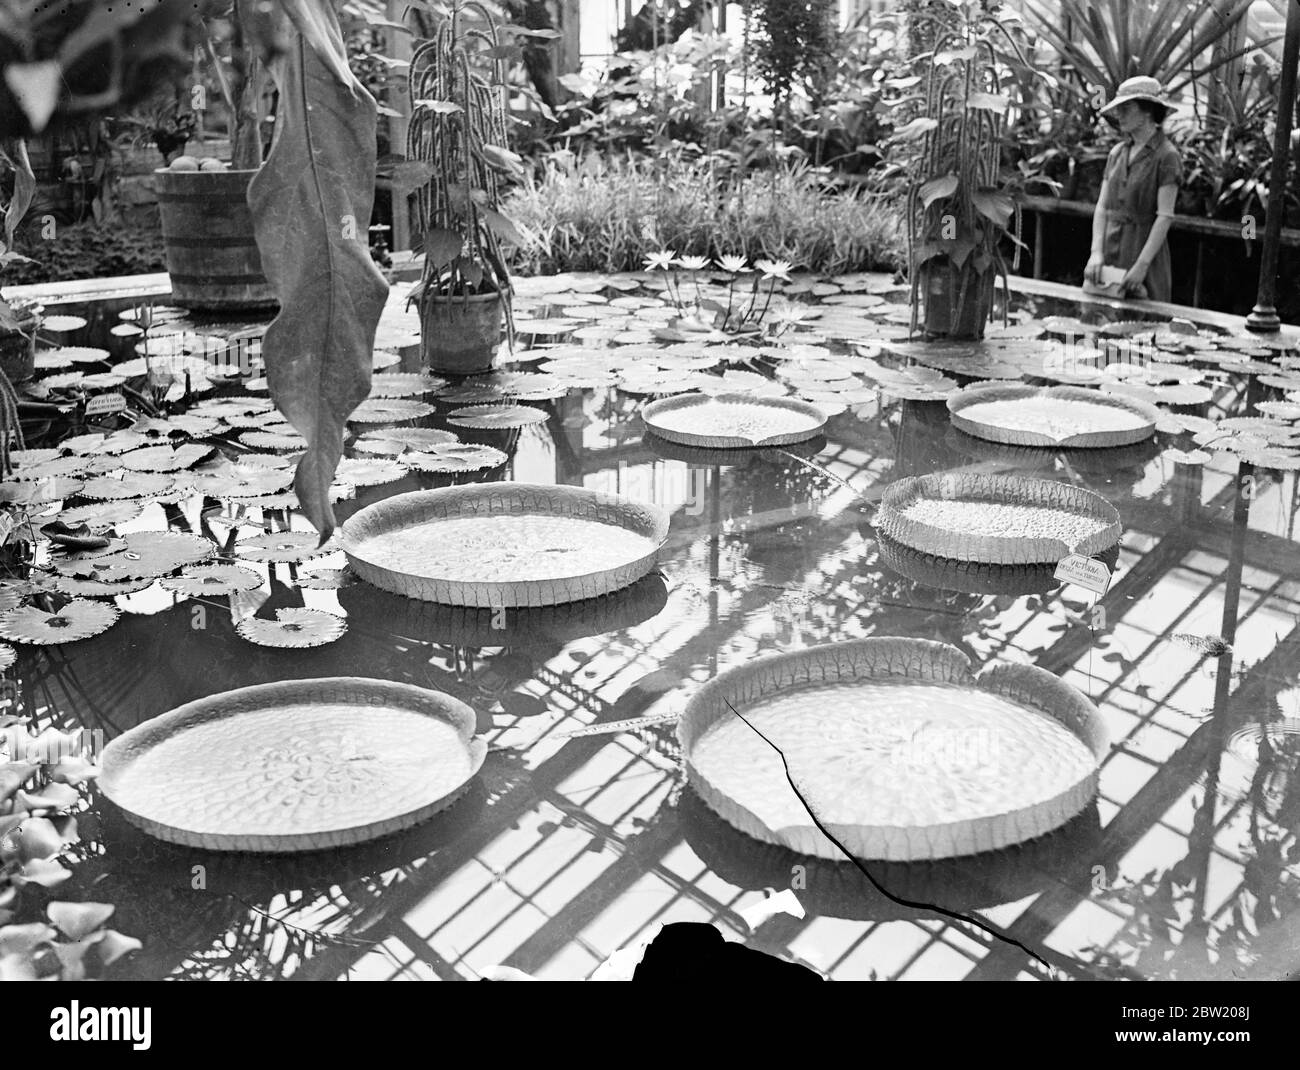 Eine neue Sorte von gigantischen Seerose, die diesen Durchmesser von 1/2 ft erreicht, wurde zum ersten Mal in den heißen Häusern angebaut Kew Gardens die Seerose ist als die trickrige Sorte der Victoria Reggie bekannt. 21 Juli 1937 Stockfoto